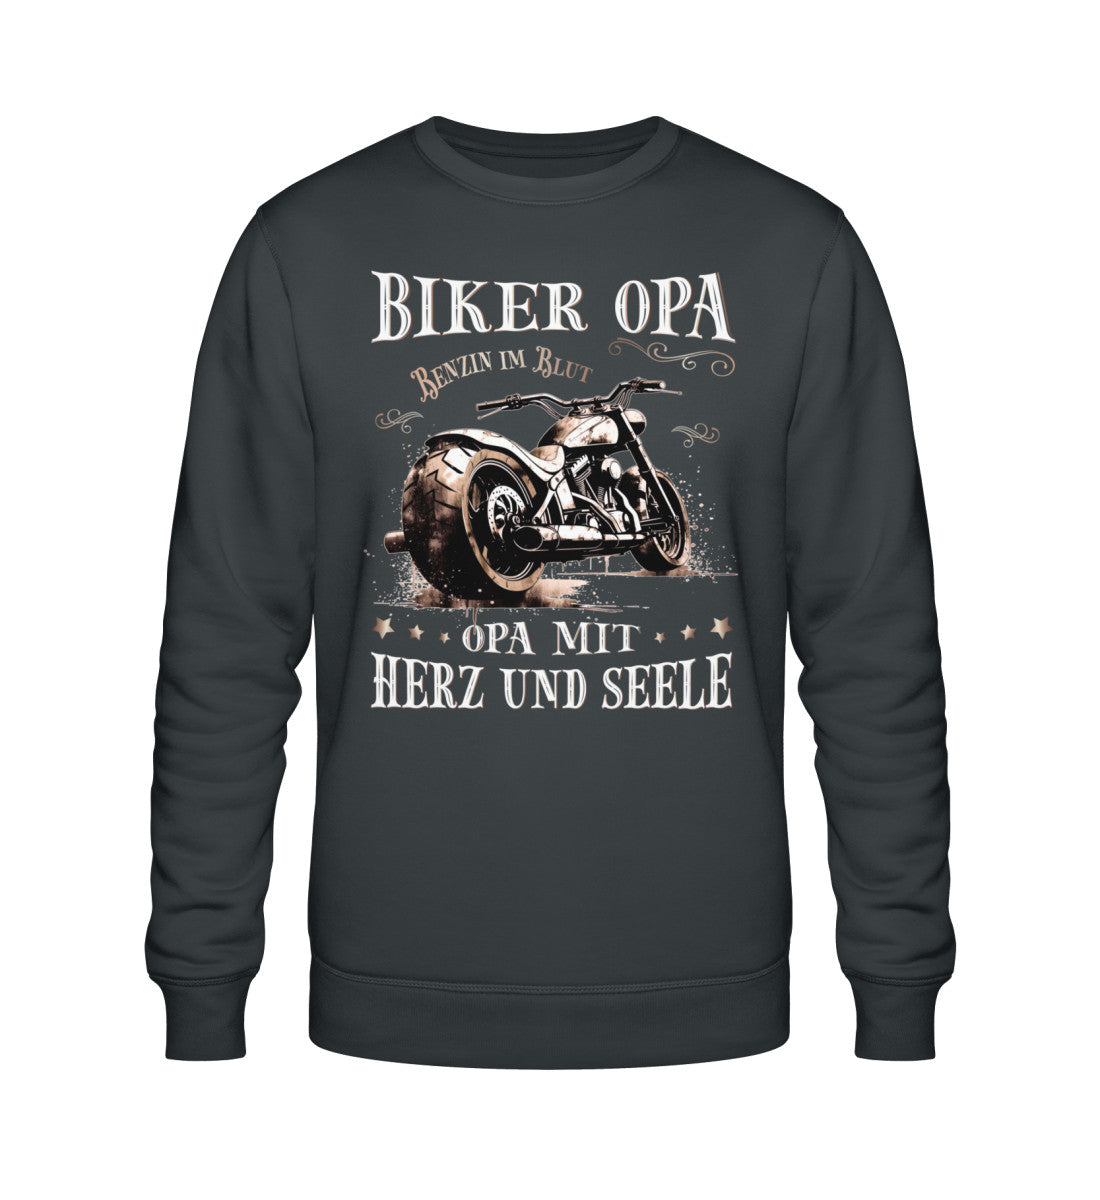 Ein Biker Sweatshirt für Motorradfahrer von Wingbikers mit dem Aufdruck, Biker Opa - Benzin im Blut - Opa mit Herz und Seele, in dunkelgrau.